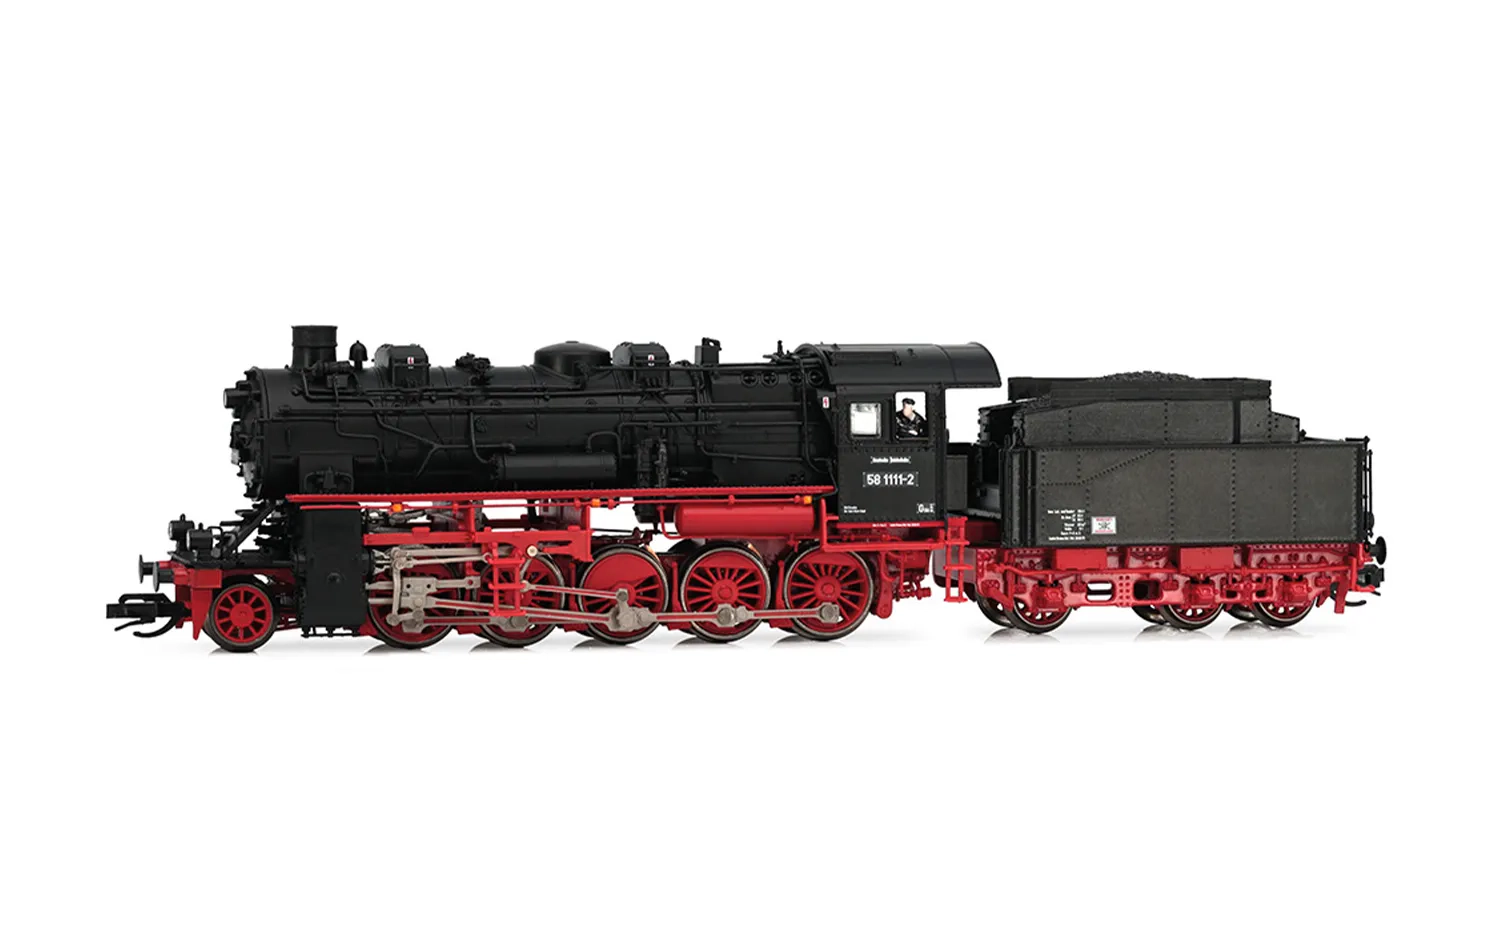 DR, Dampflokomotive 58 1111-2, dreidomiger Kessel, mit drei Spitzenlicht, Ep. IV